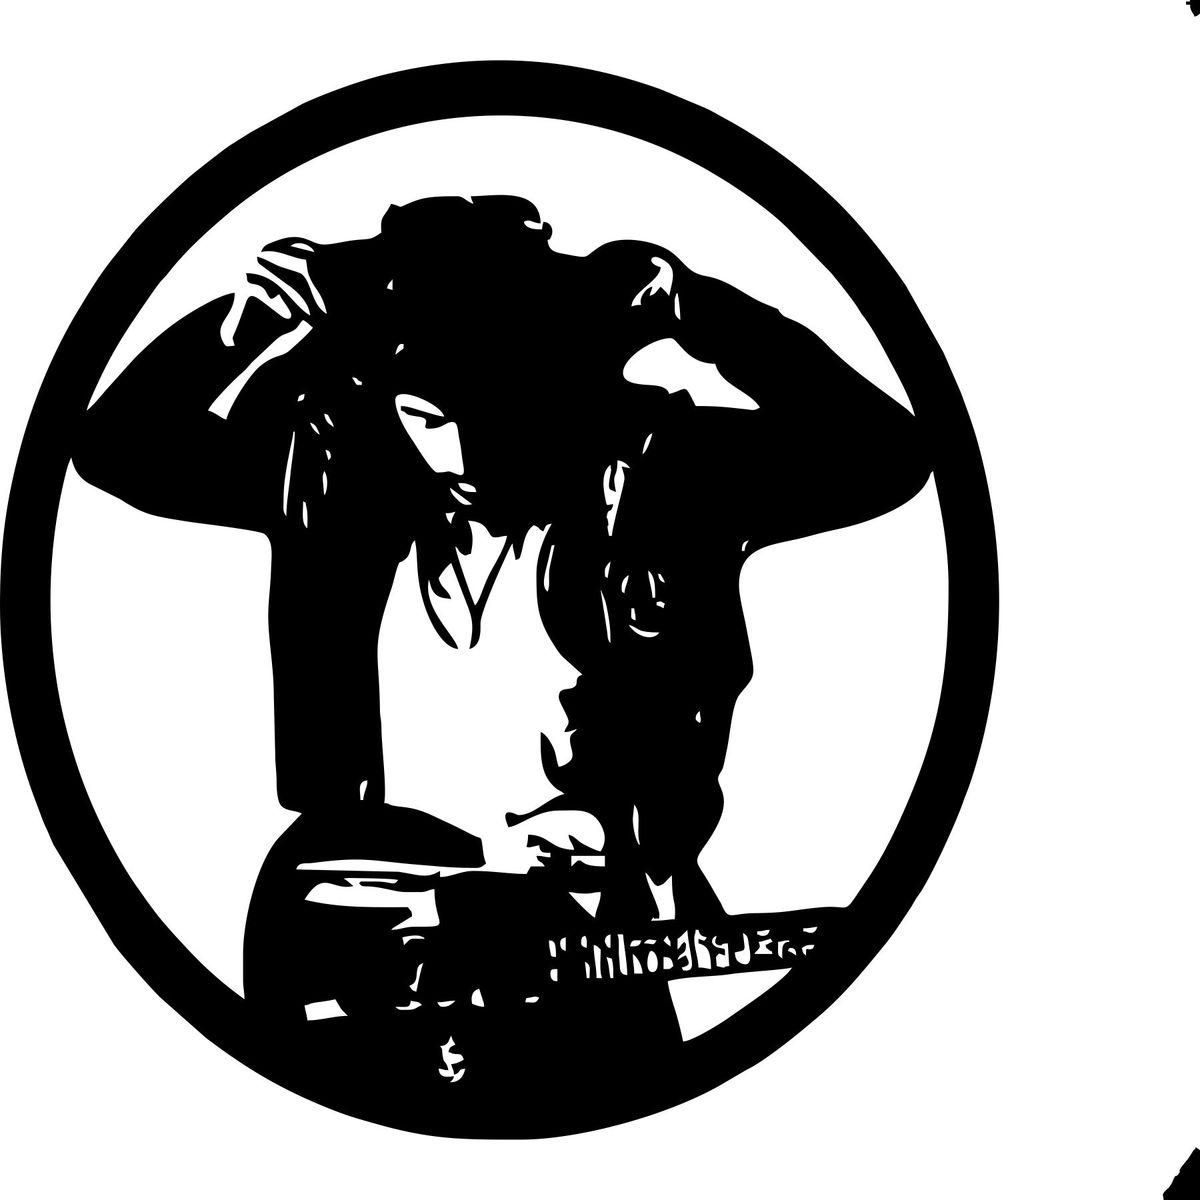 Bruce Springsteen Logo - bruce springsteen-4 Laser Cut Vinyl Record artist representation ...